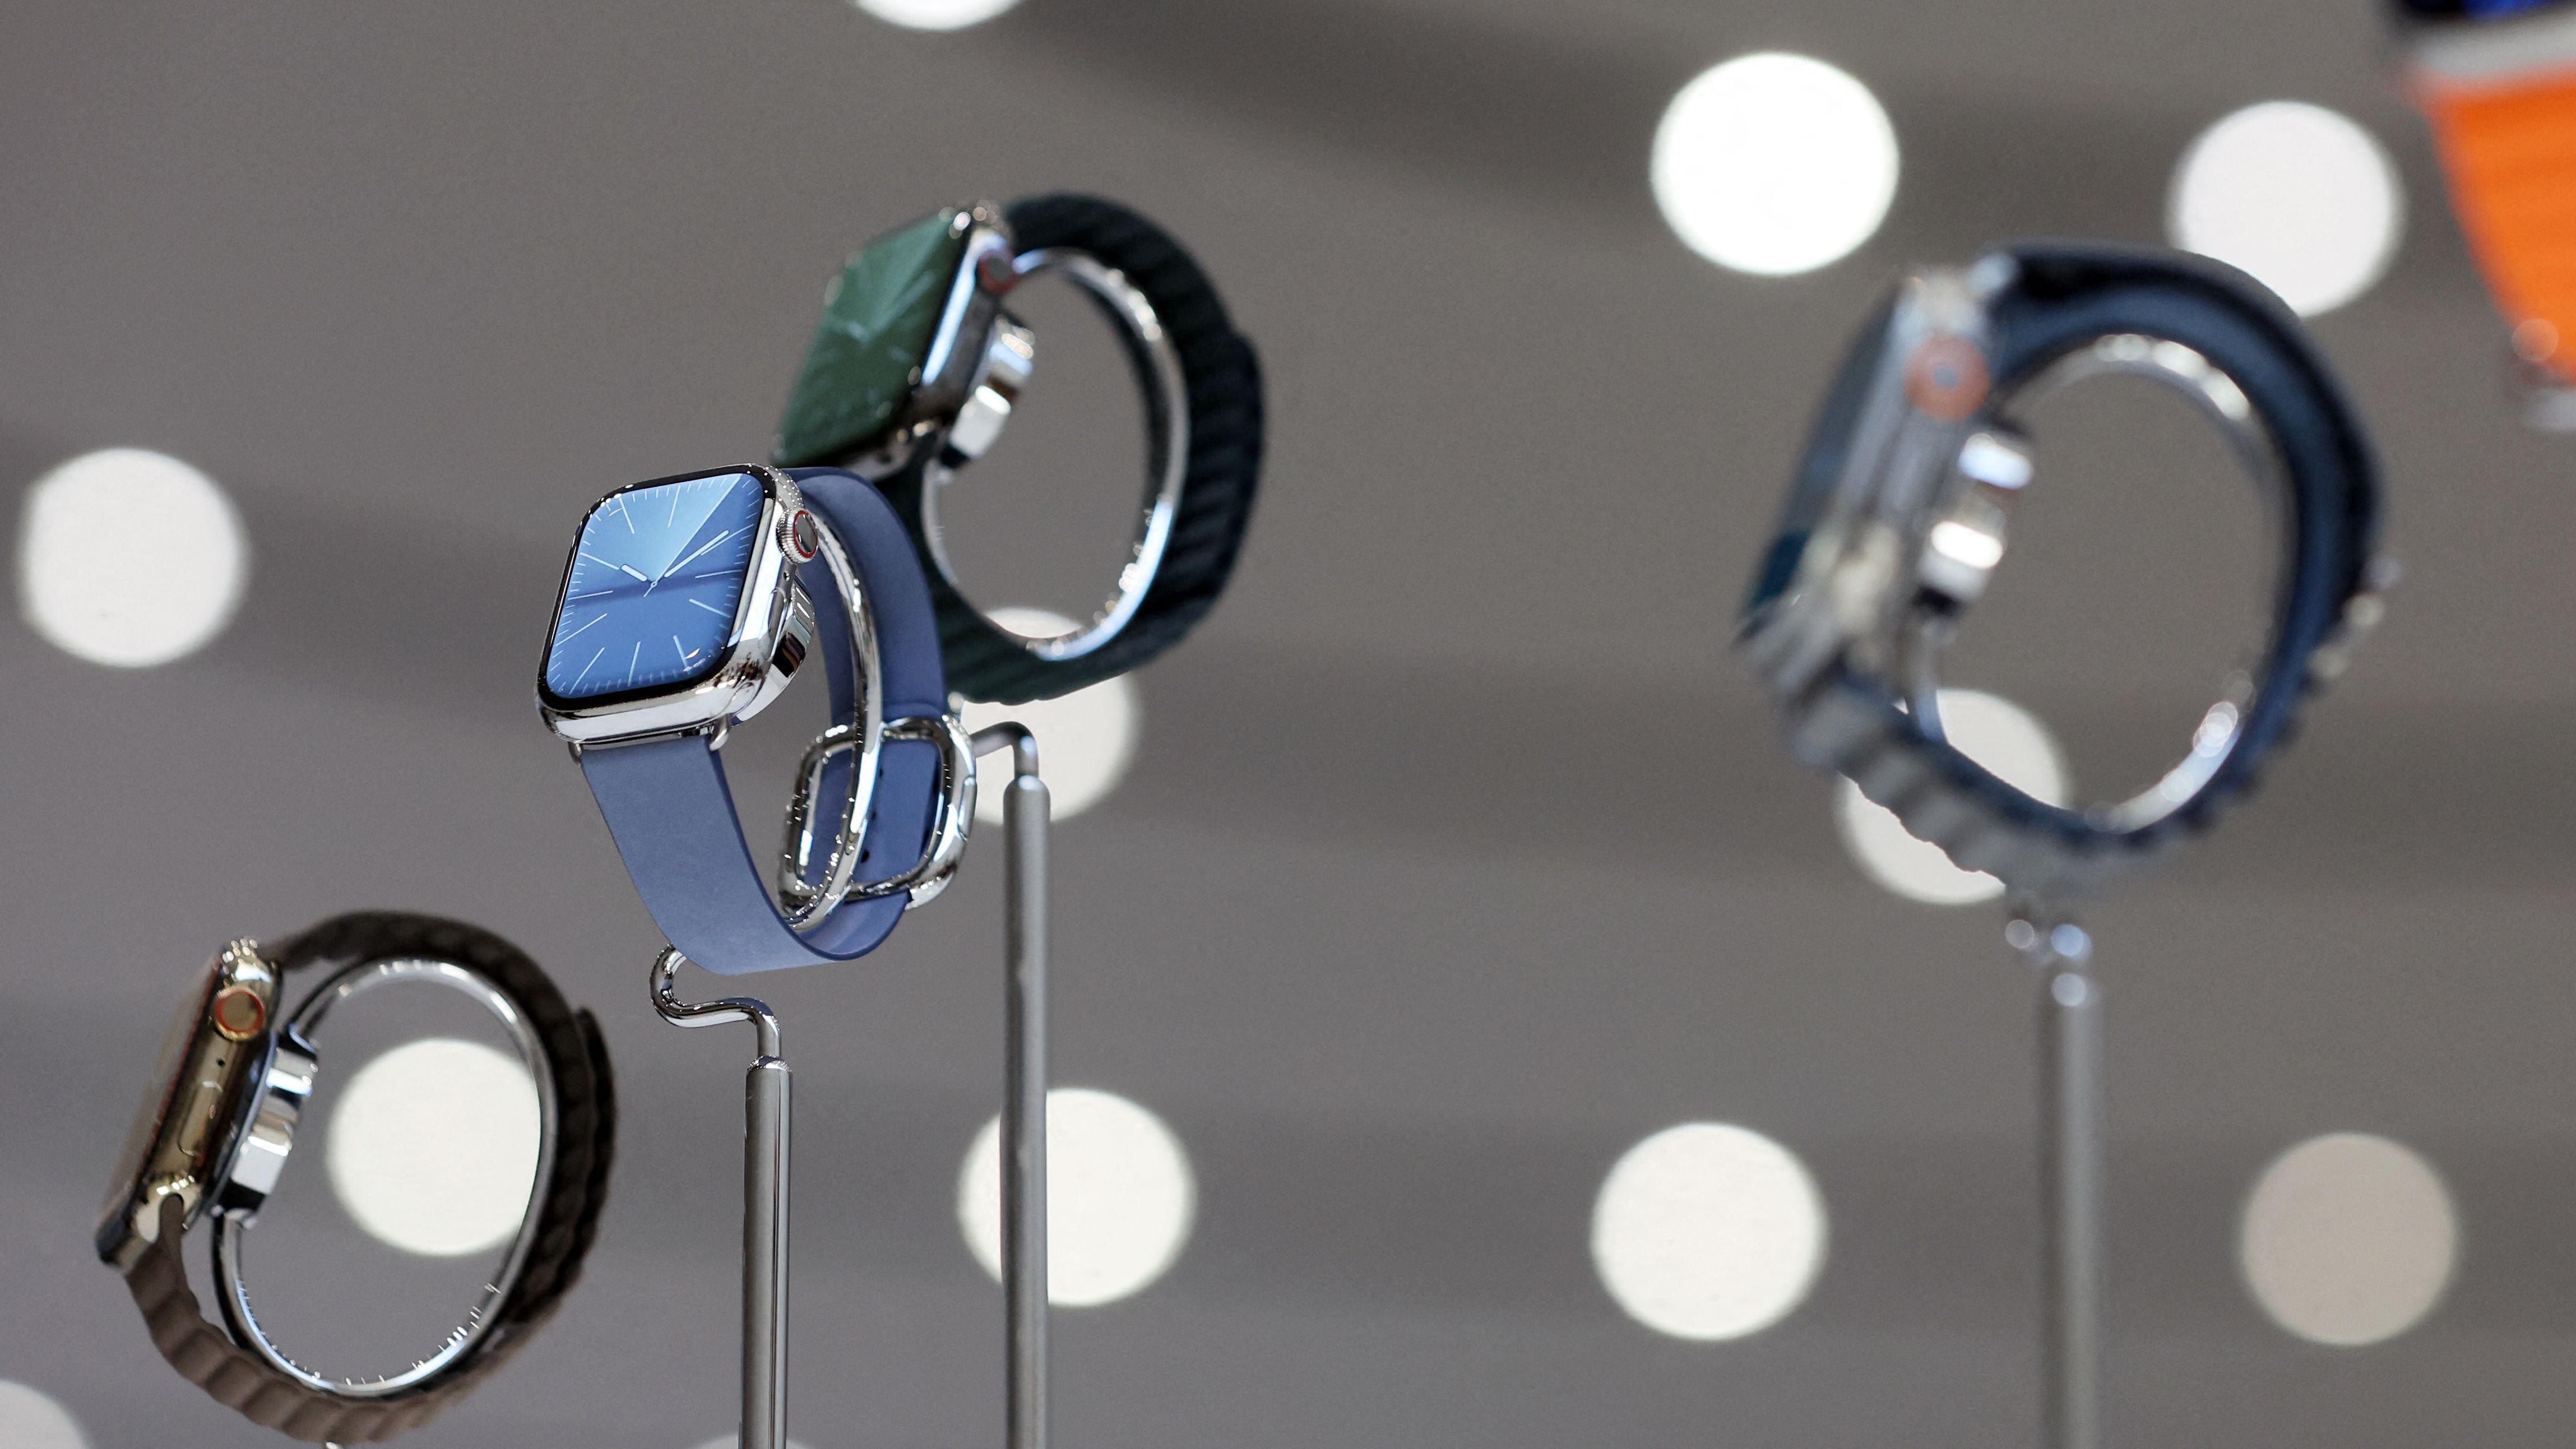 Los relojes inteligentes Apple Watch detectarán el sudor con el fin de prevenir la deshidratación durante la actividad física de sus usuarios.